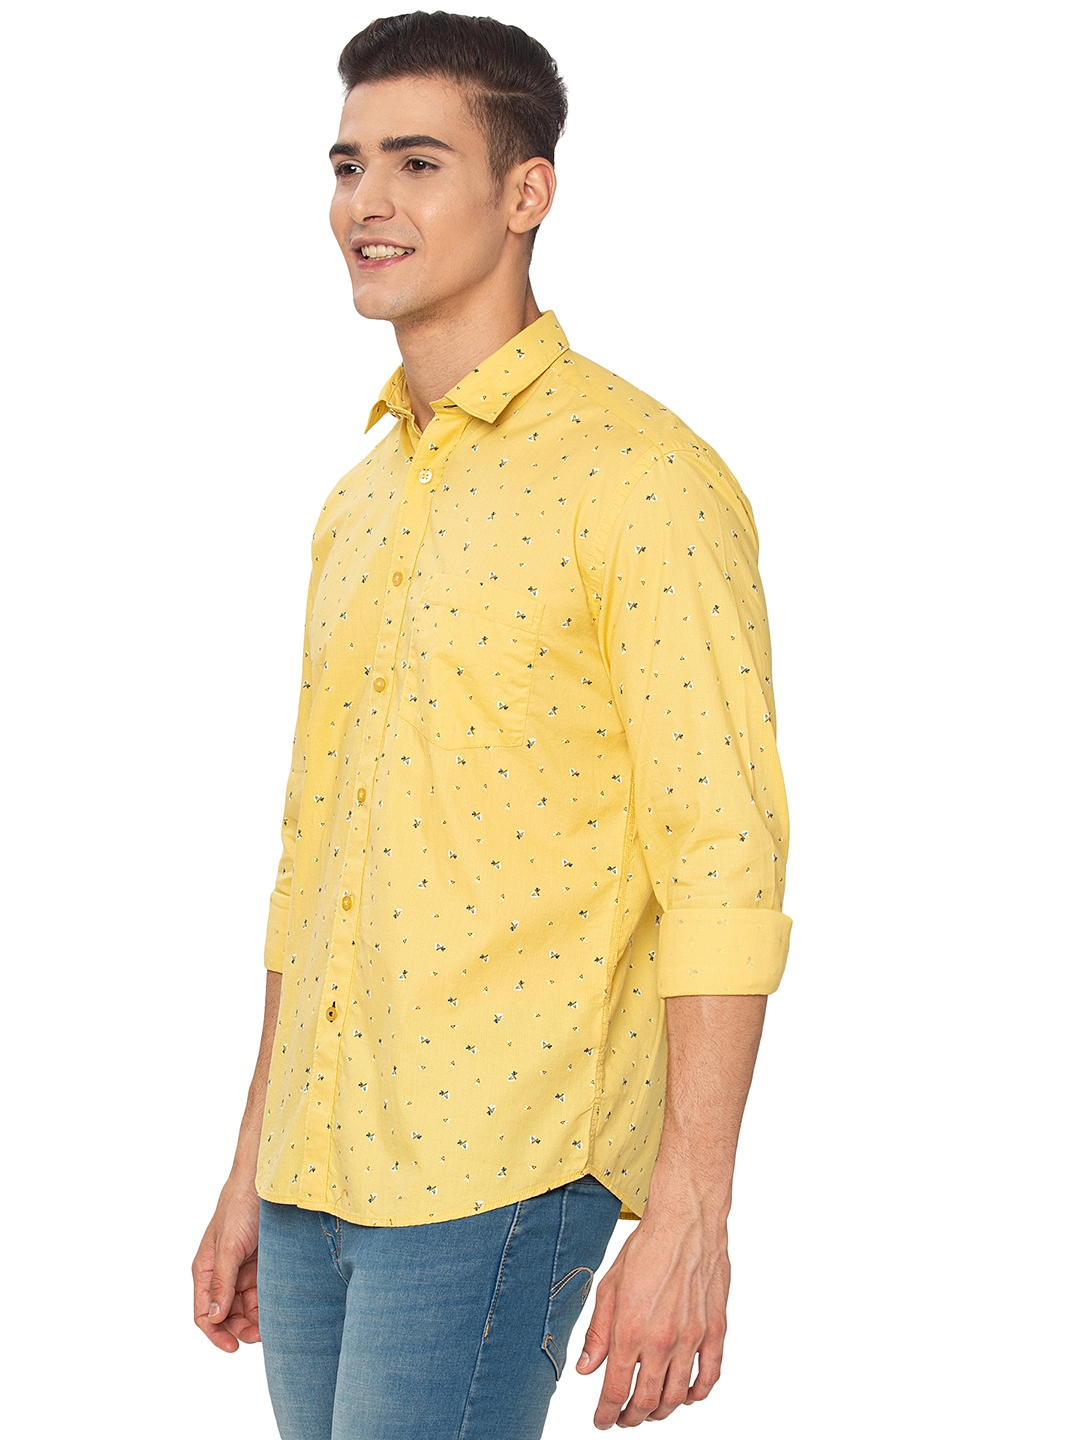 Greenfibre | Lemon Yellow Printed Slim Fit Casual Shirt | Greenfibre 1